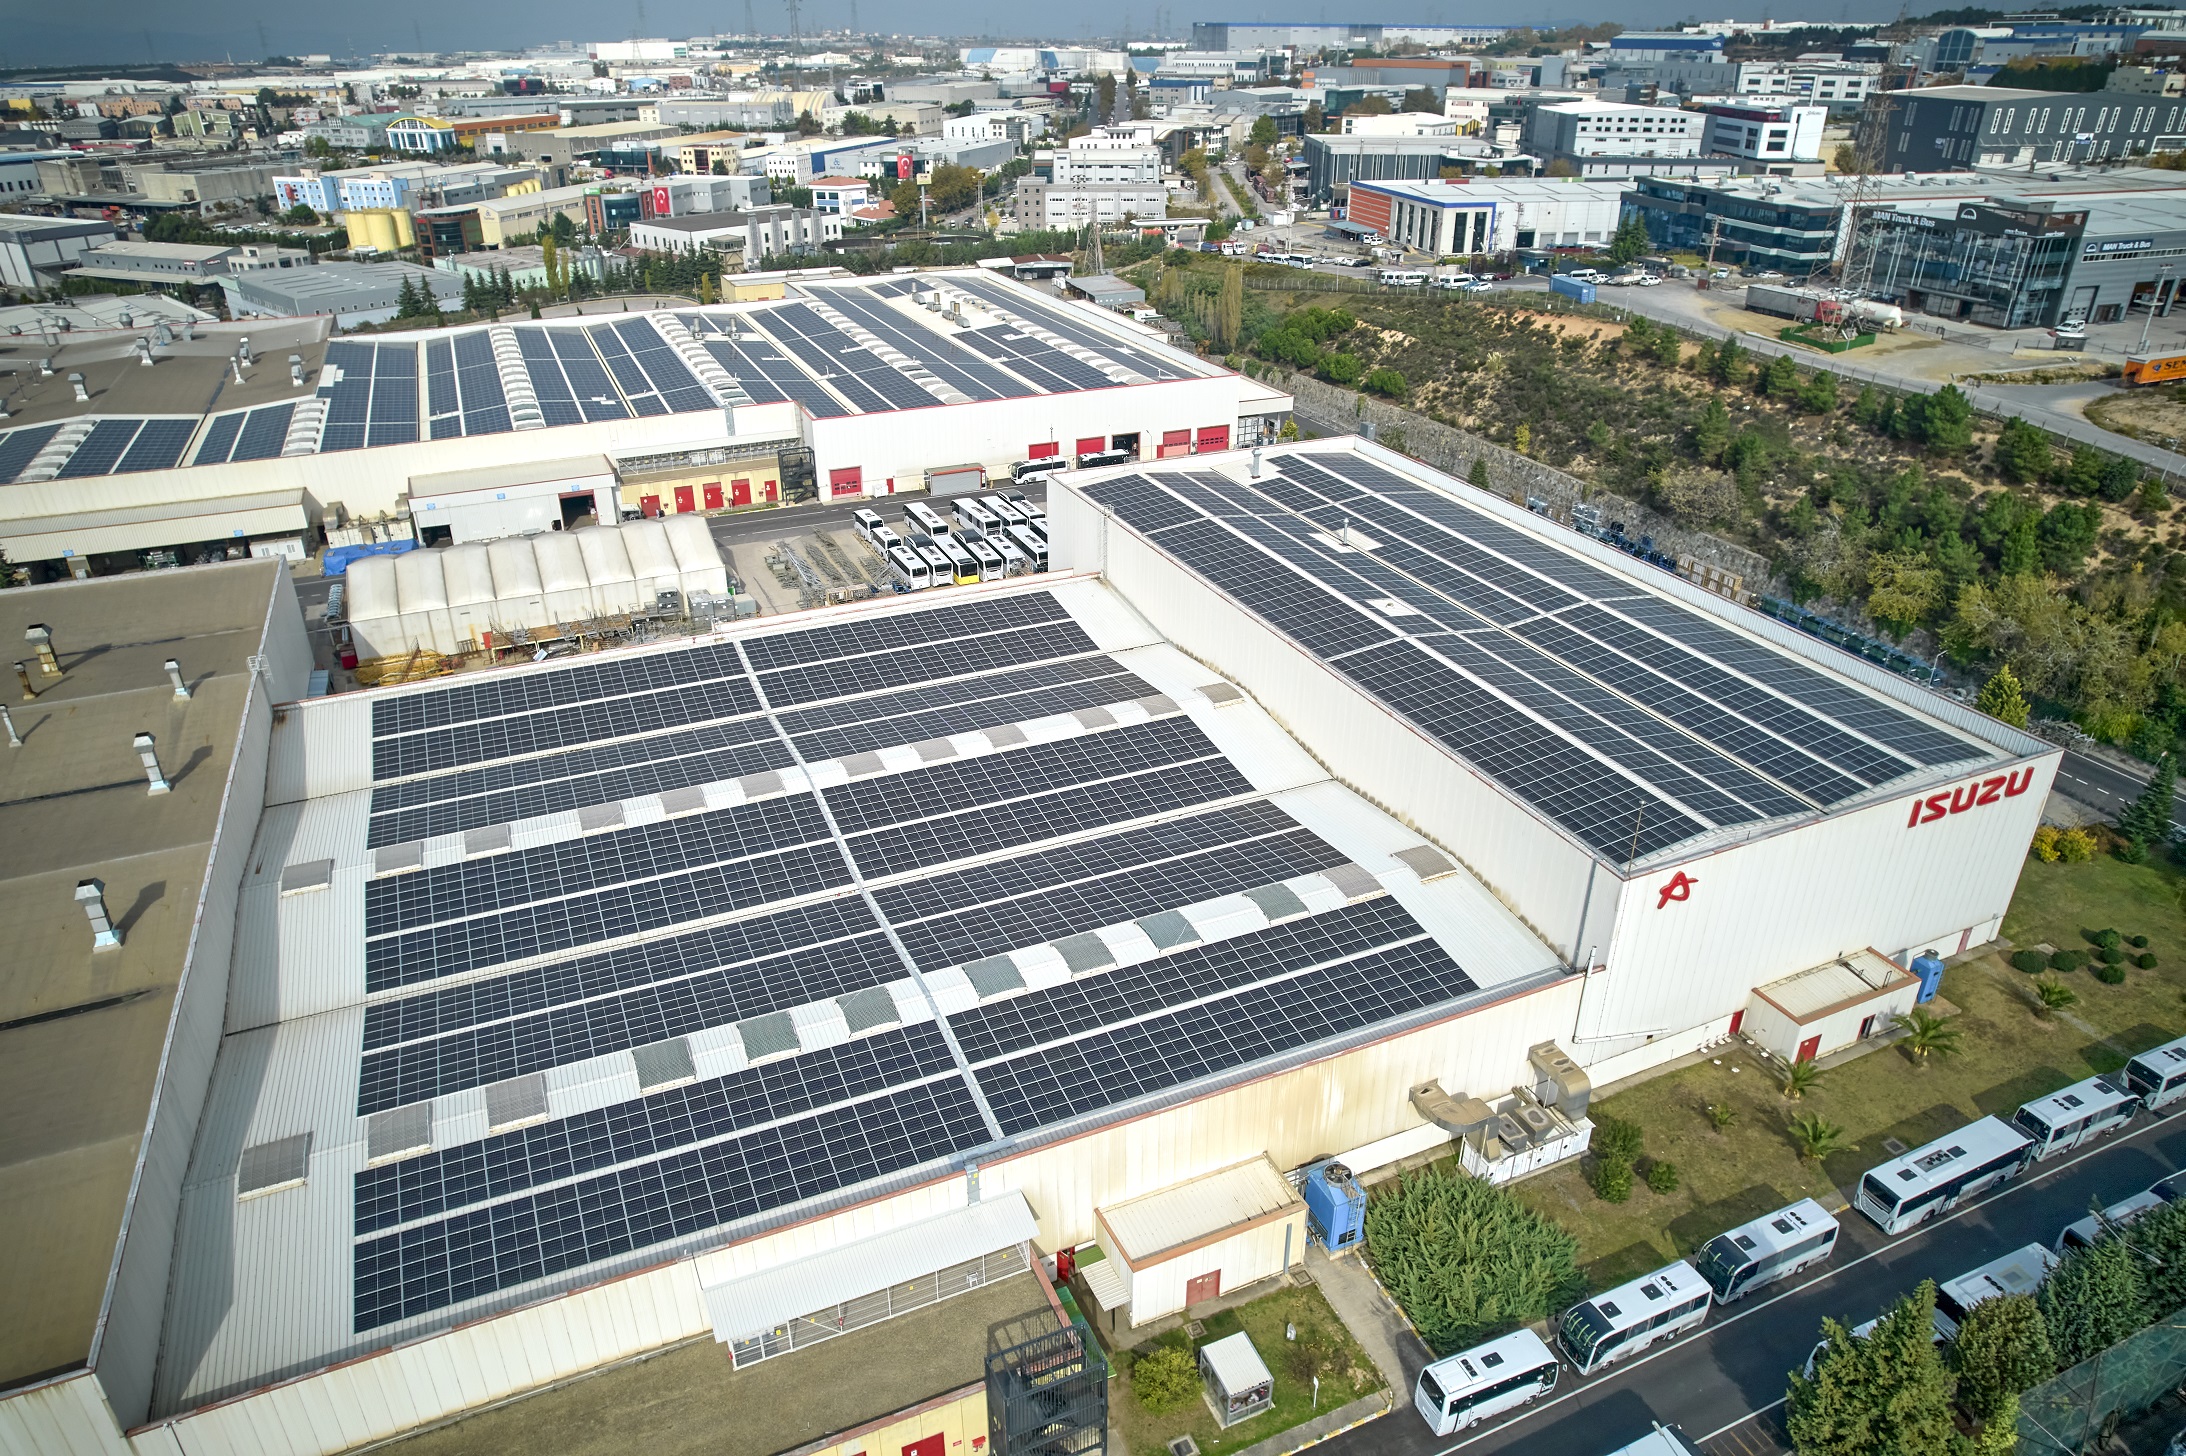 Anadolu Isuzu üretim tesislerindeki, elektrik ihtiyacının %70’ini güneş enerjisinden sağlayacak